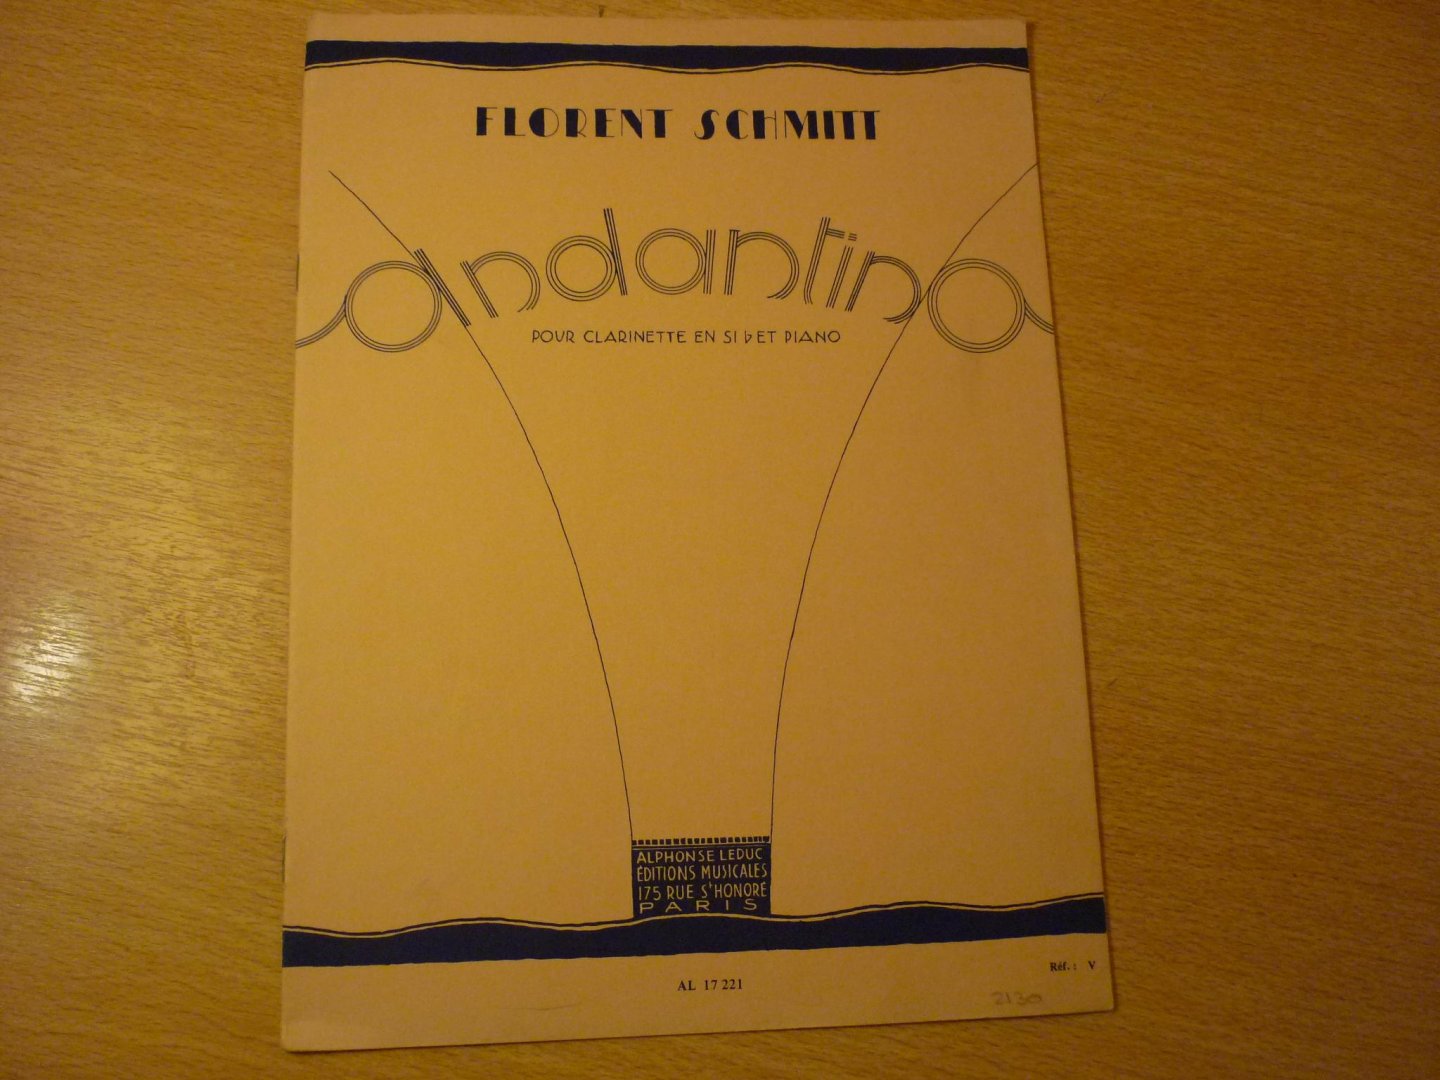 Schmitt; Florent - Andantino; pour clarinette en Si b et Piano; Op. 30. No. 1